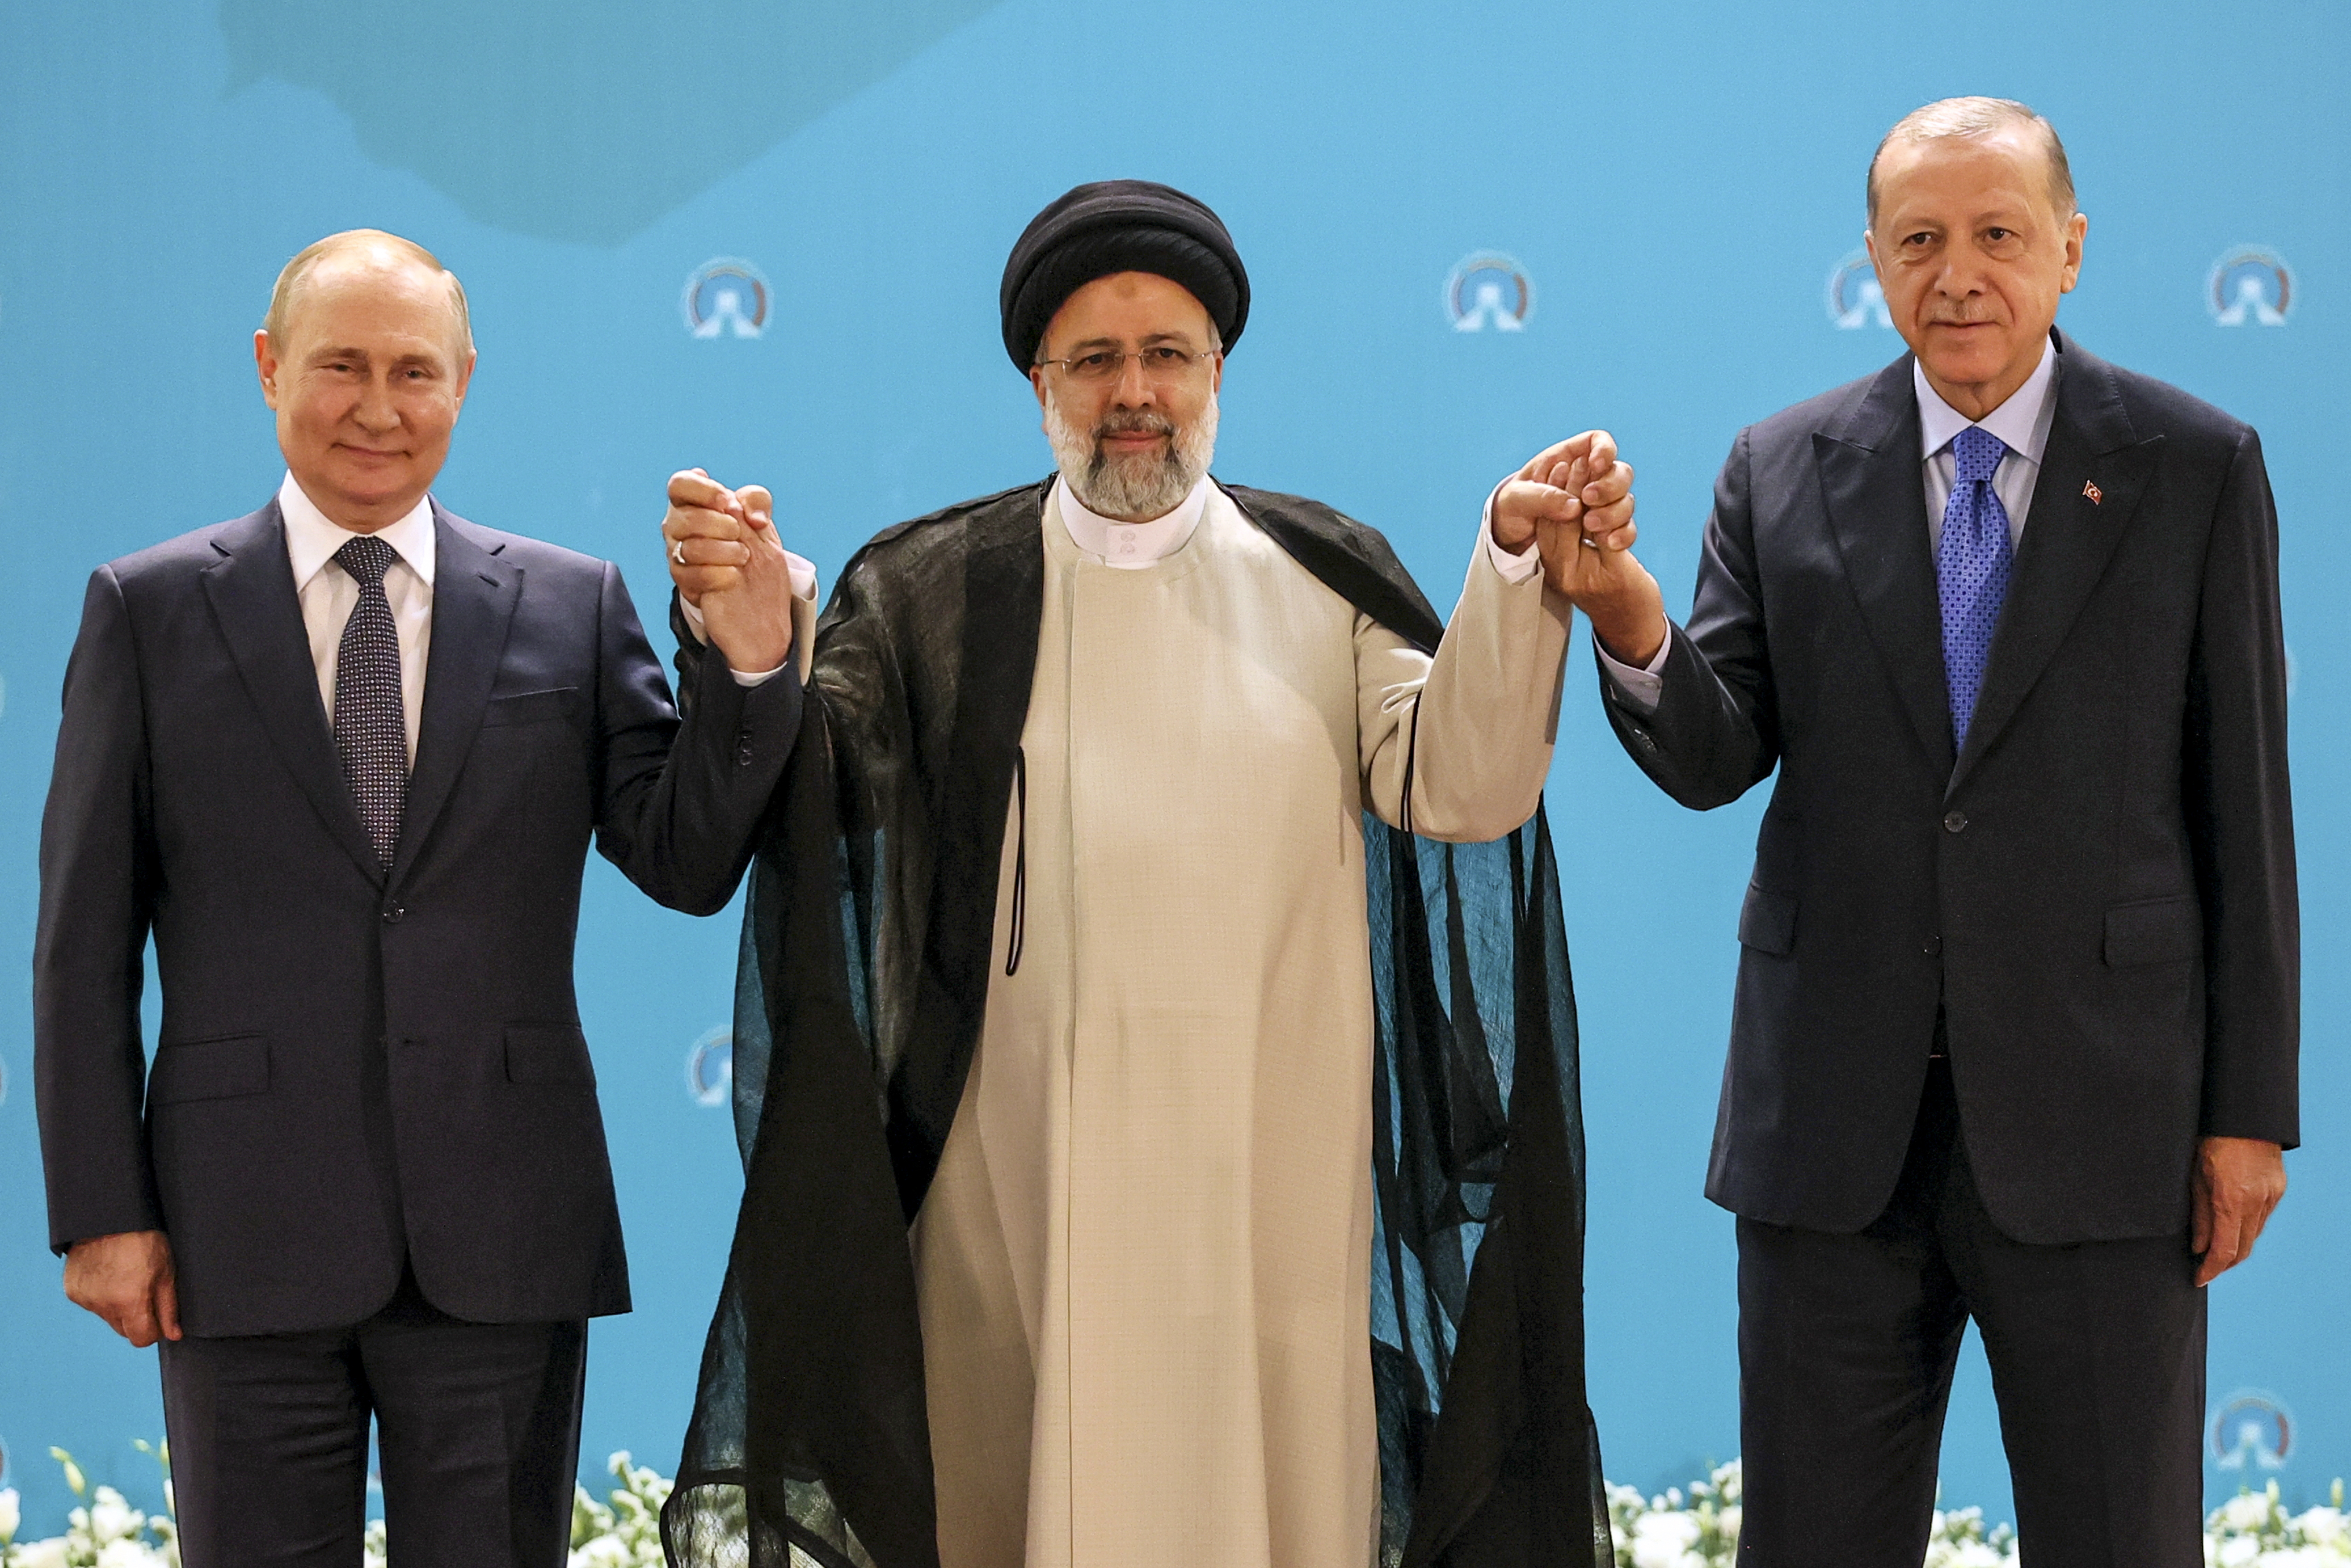 Los presidentes de Rusia Vladimir Putin, Irán Ebrahim Raisi,y Turquía Recep Tayyip Erdogan posan para las cámaras en el comienzo de la cumbre que se desarrolló en el palacio Saadabad de Tehran. (Sergei Savostyanov, Sputnik, Kremlin Pool Photo via AP)